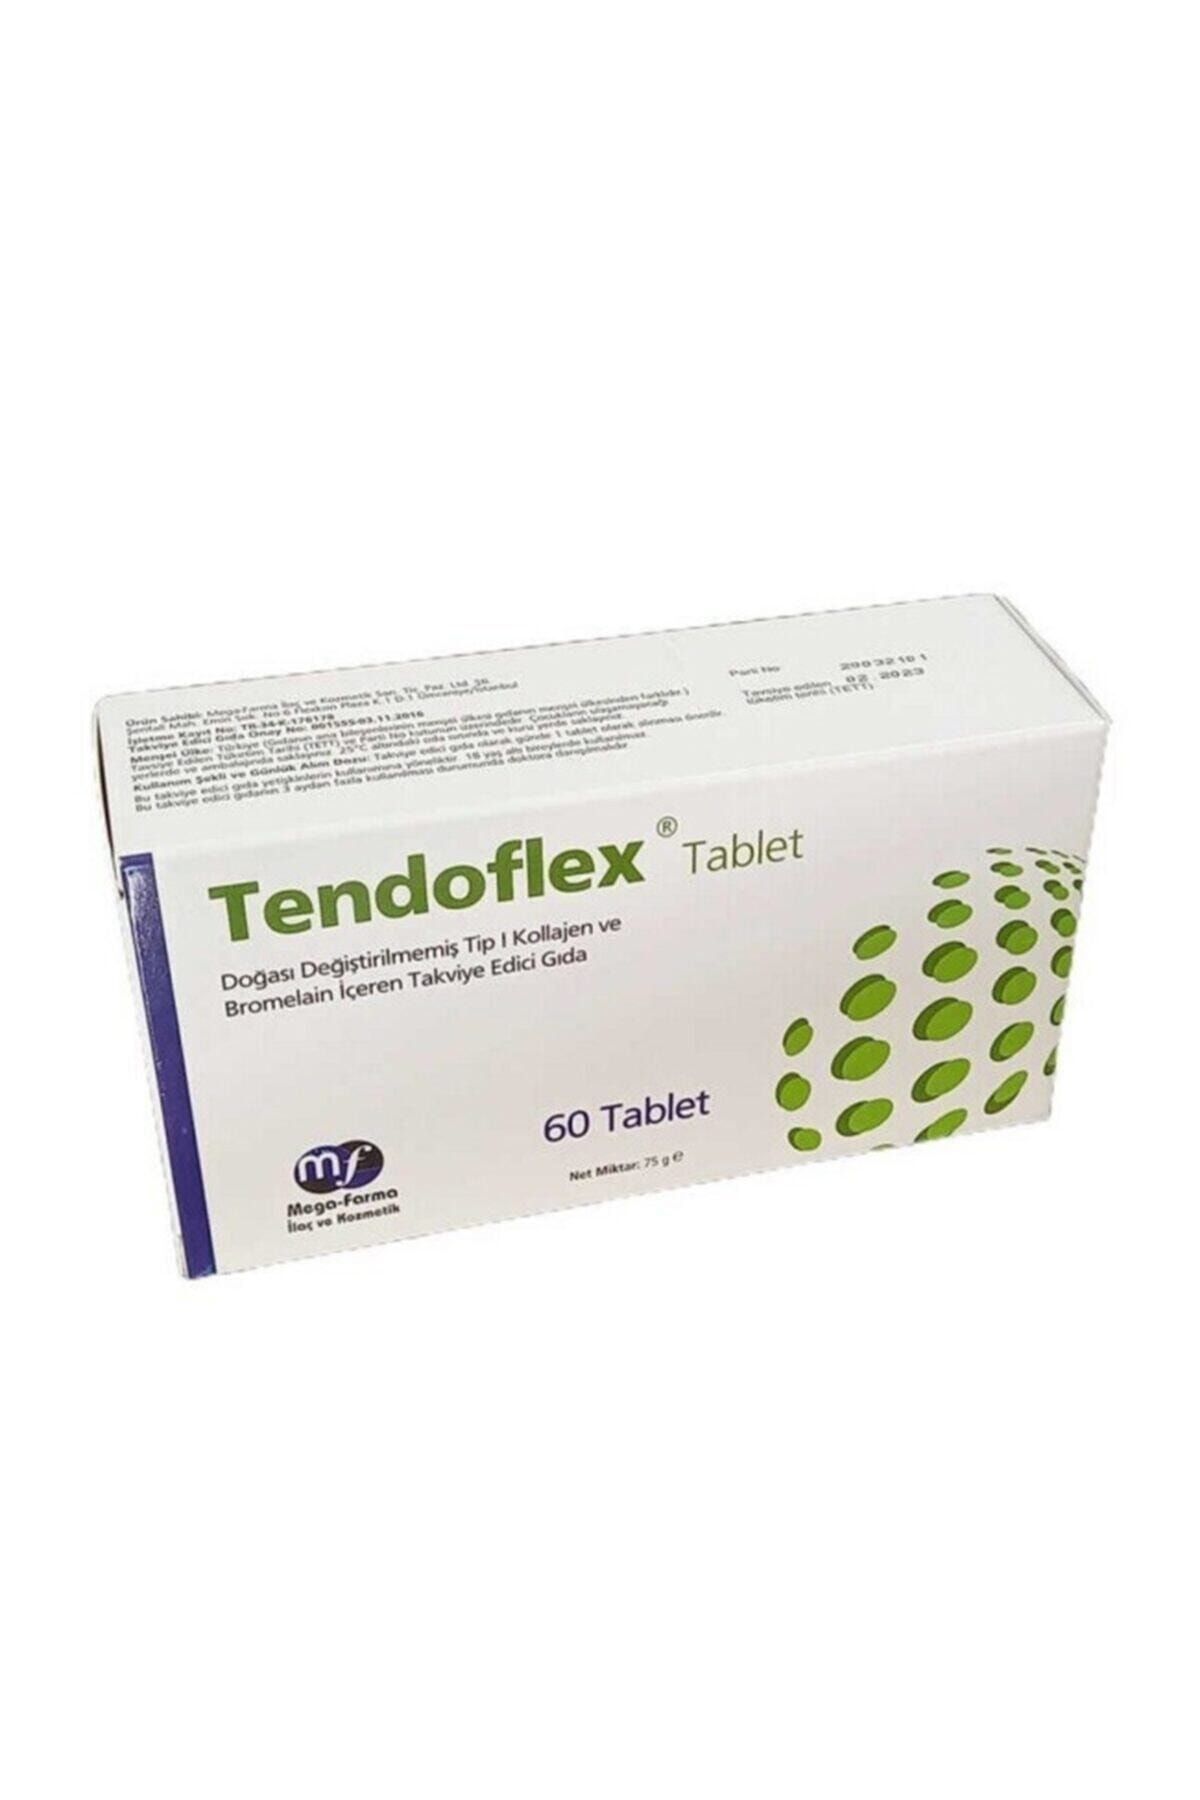 tendoflex 60 Tablet